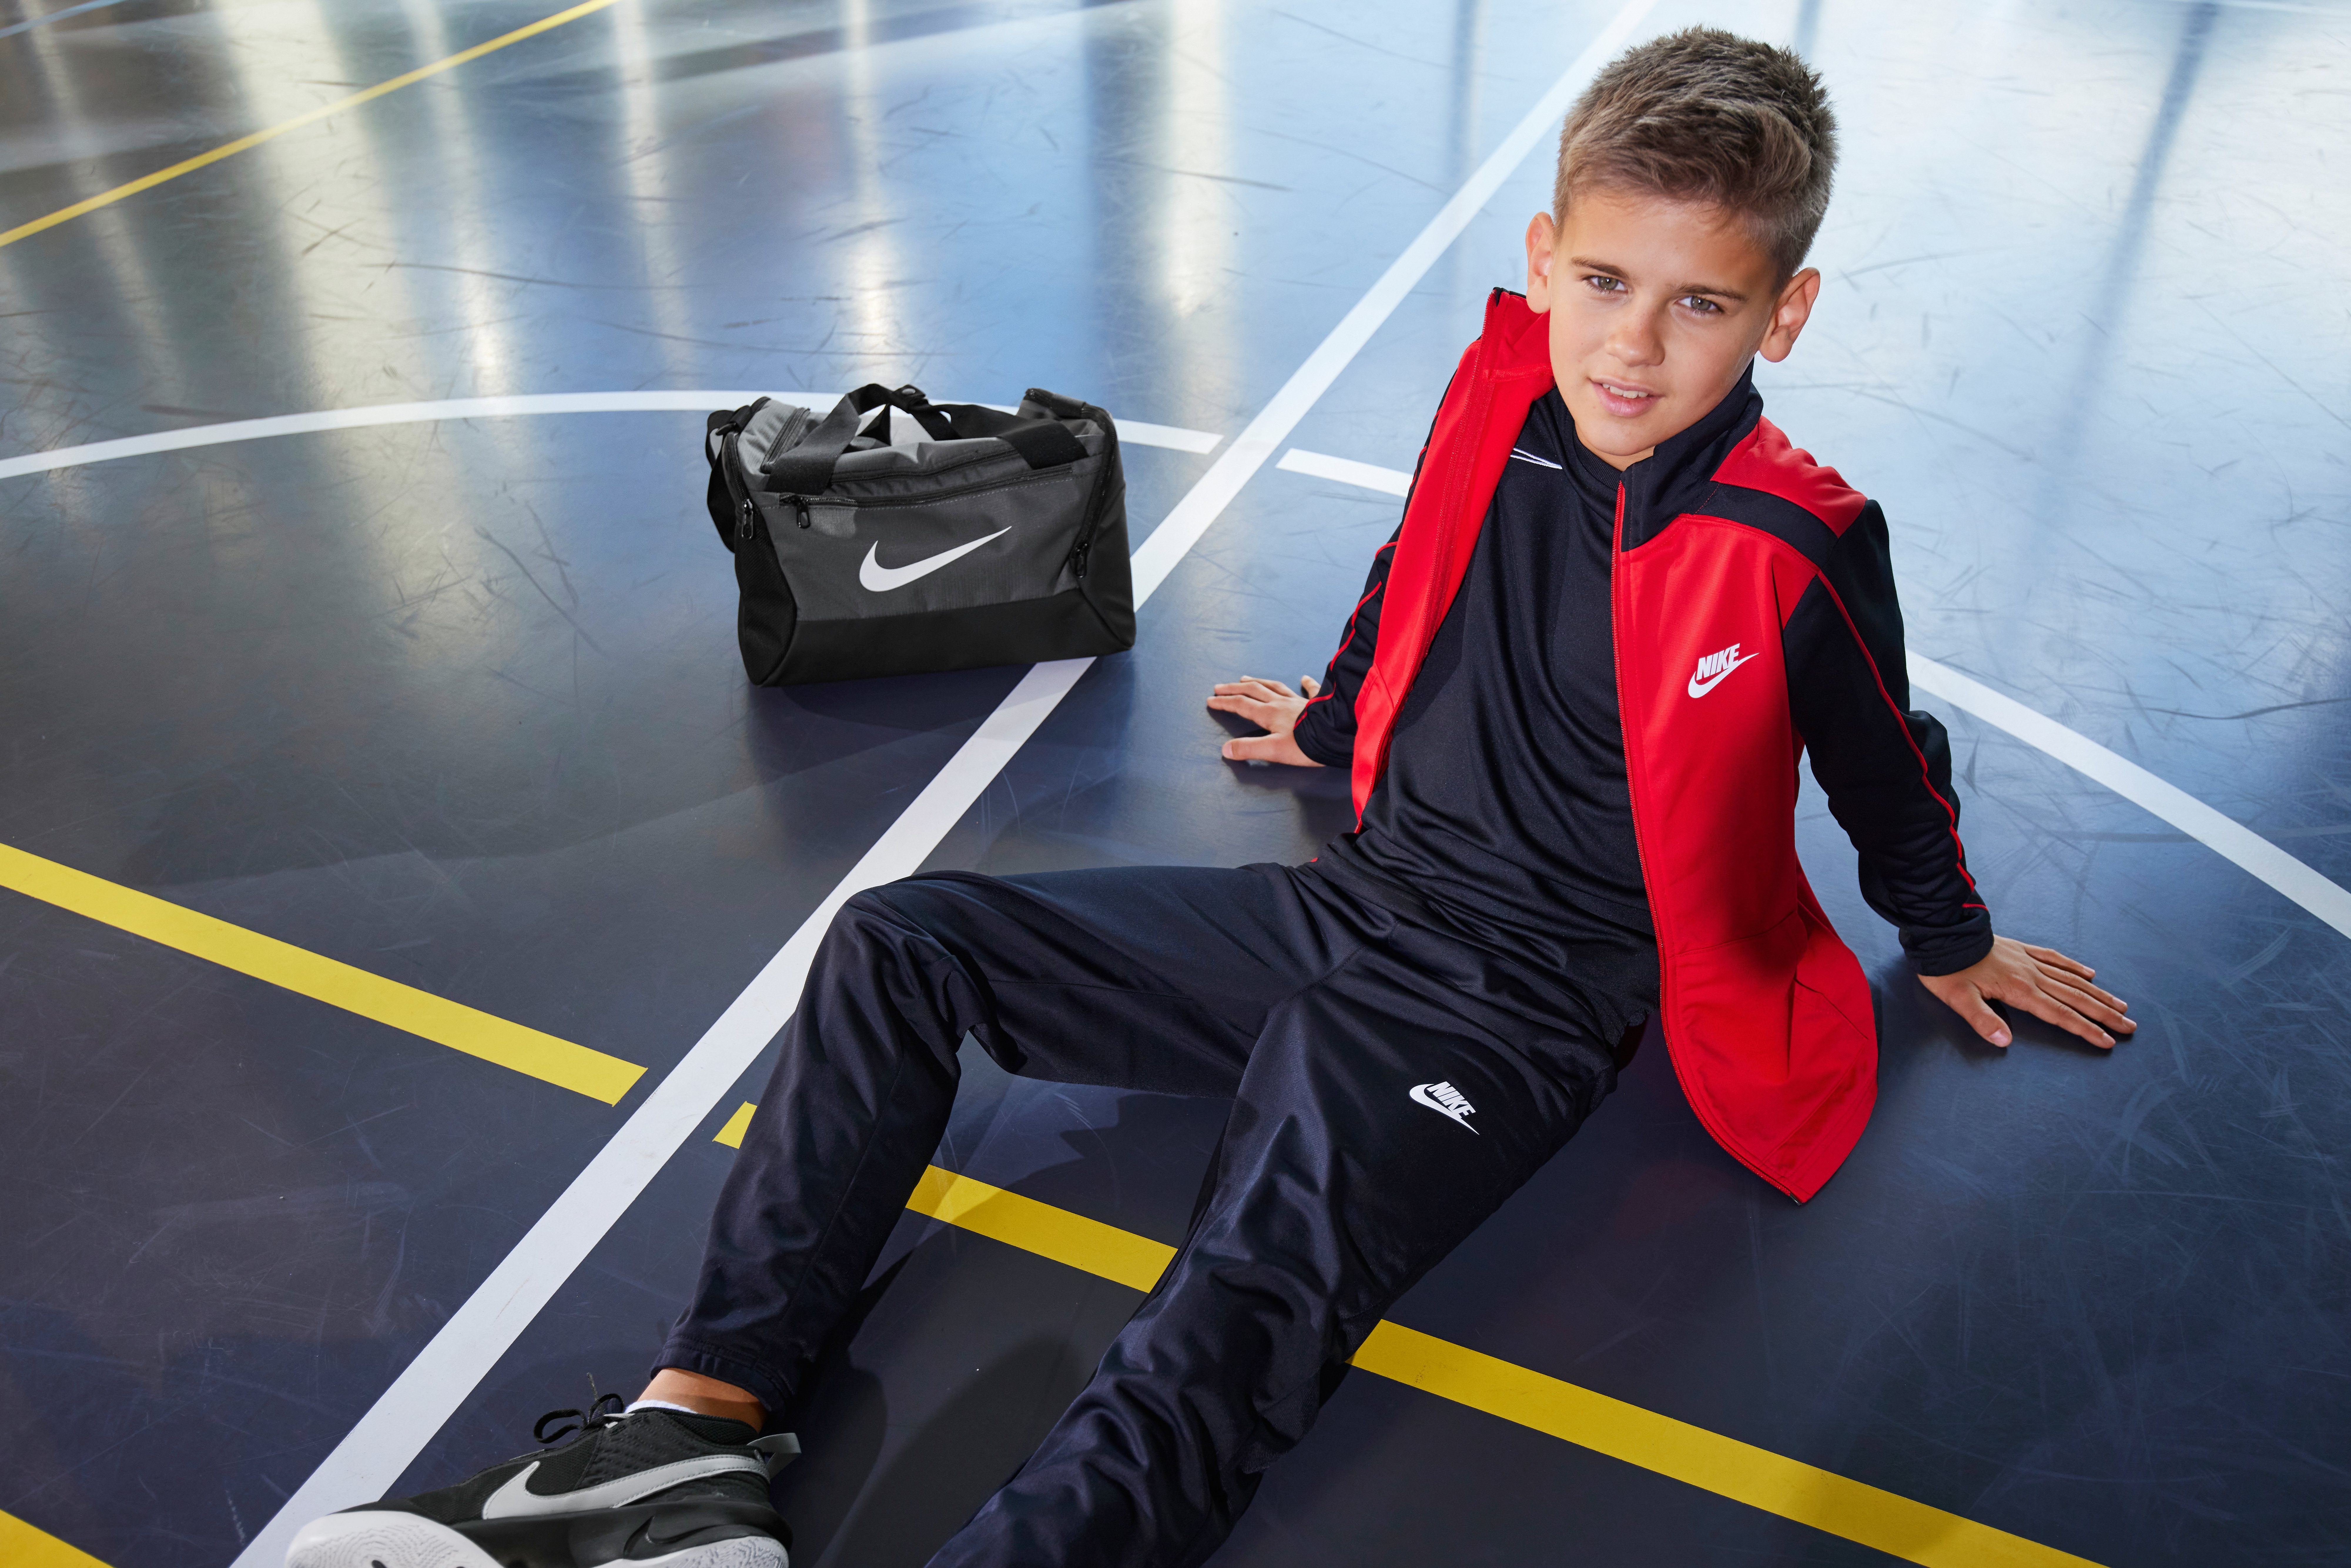 Nike Sportswear Trainingsanzug Big Kids' Tracksuit schwarz-rot